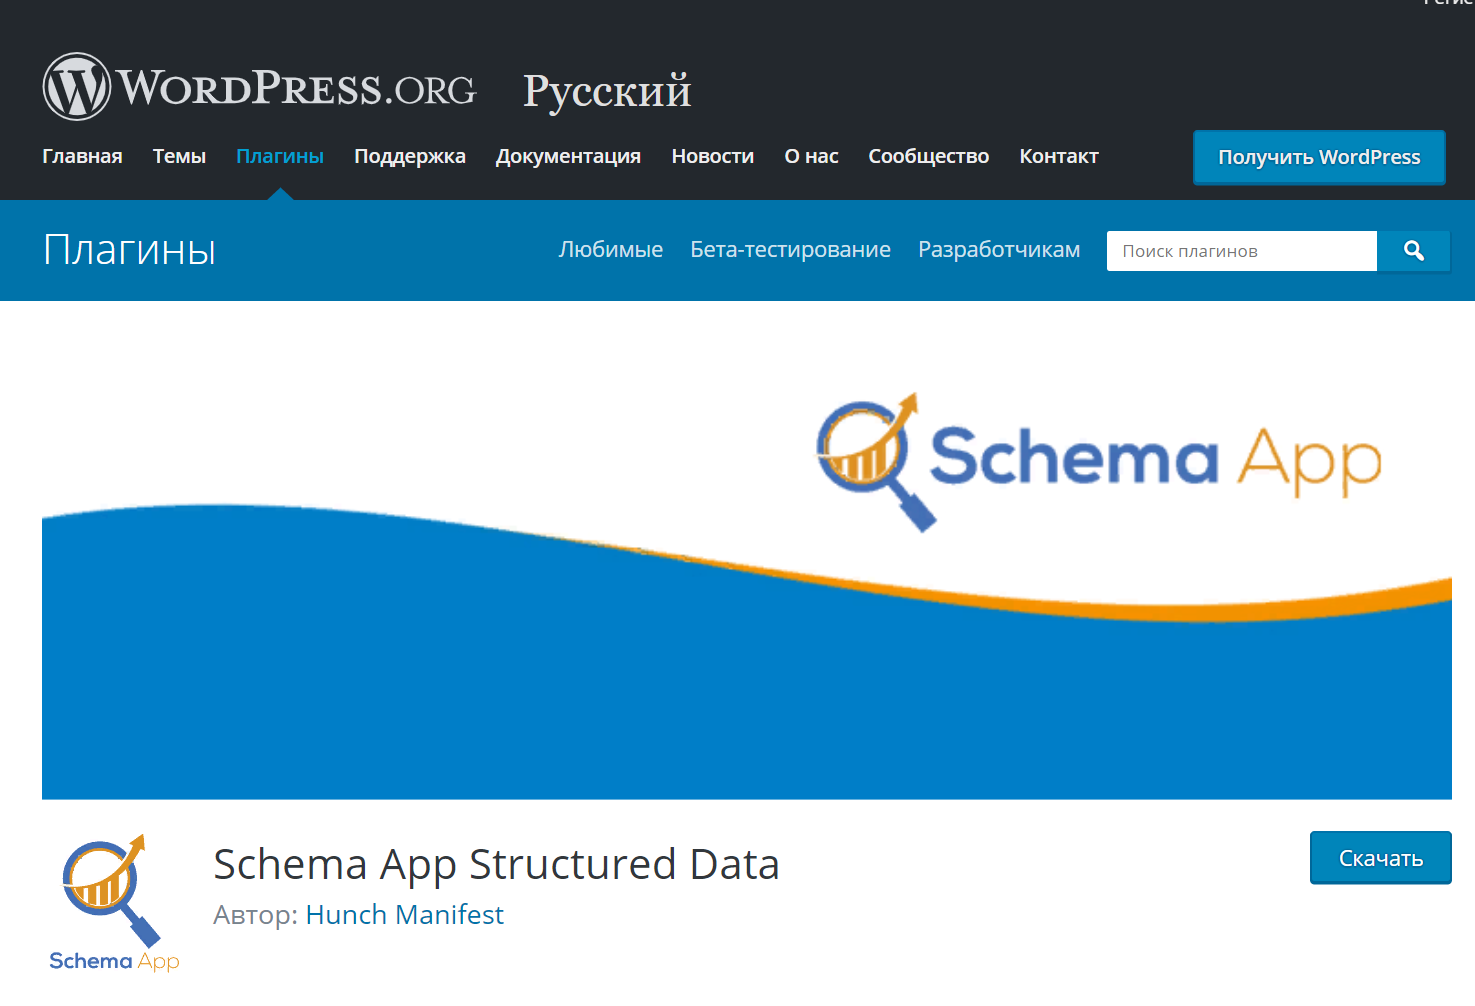    Schema App Structured Data